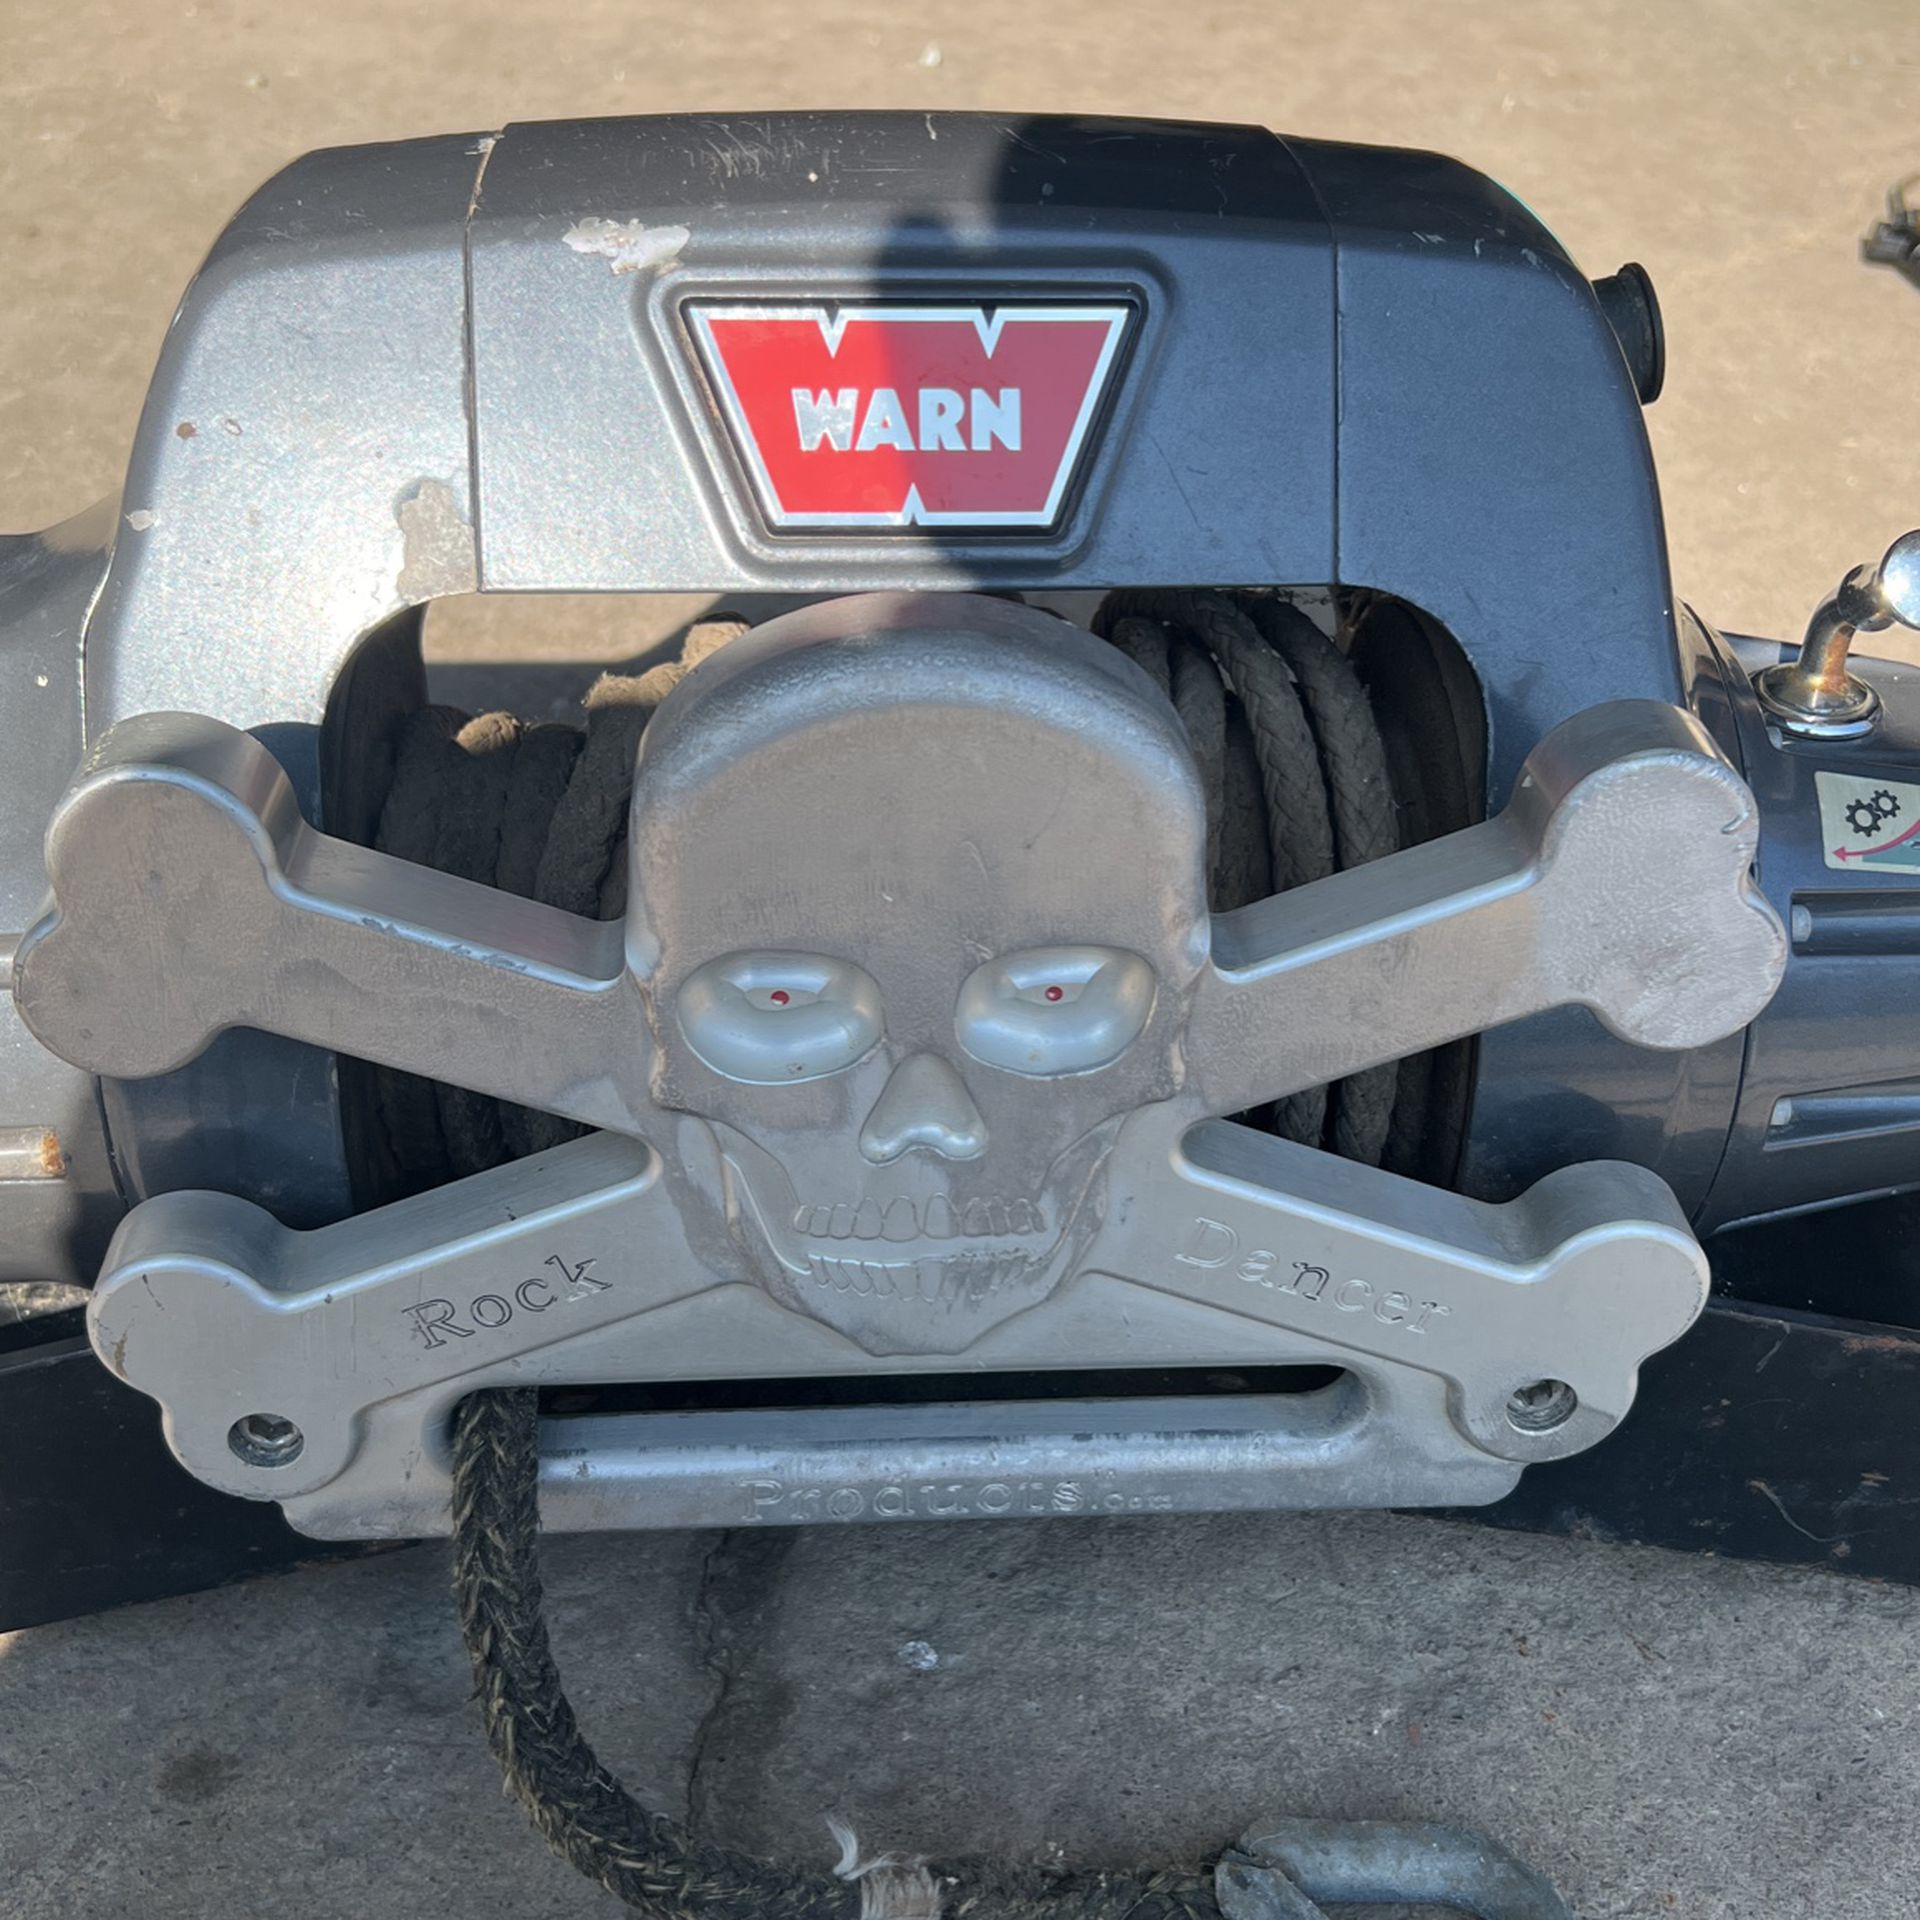 Warn Winch 9.5TI - Jeep Wrangler Mount